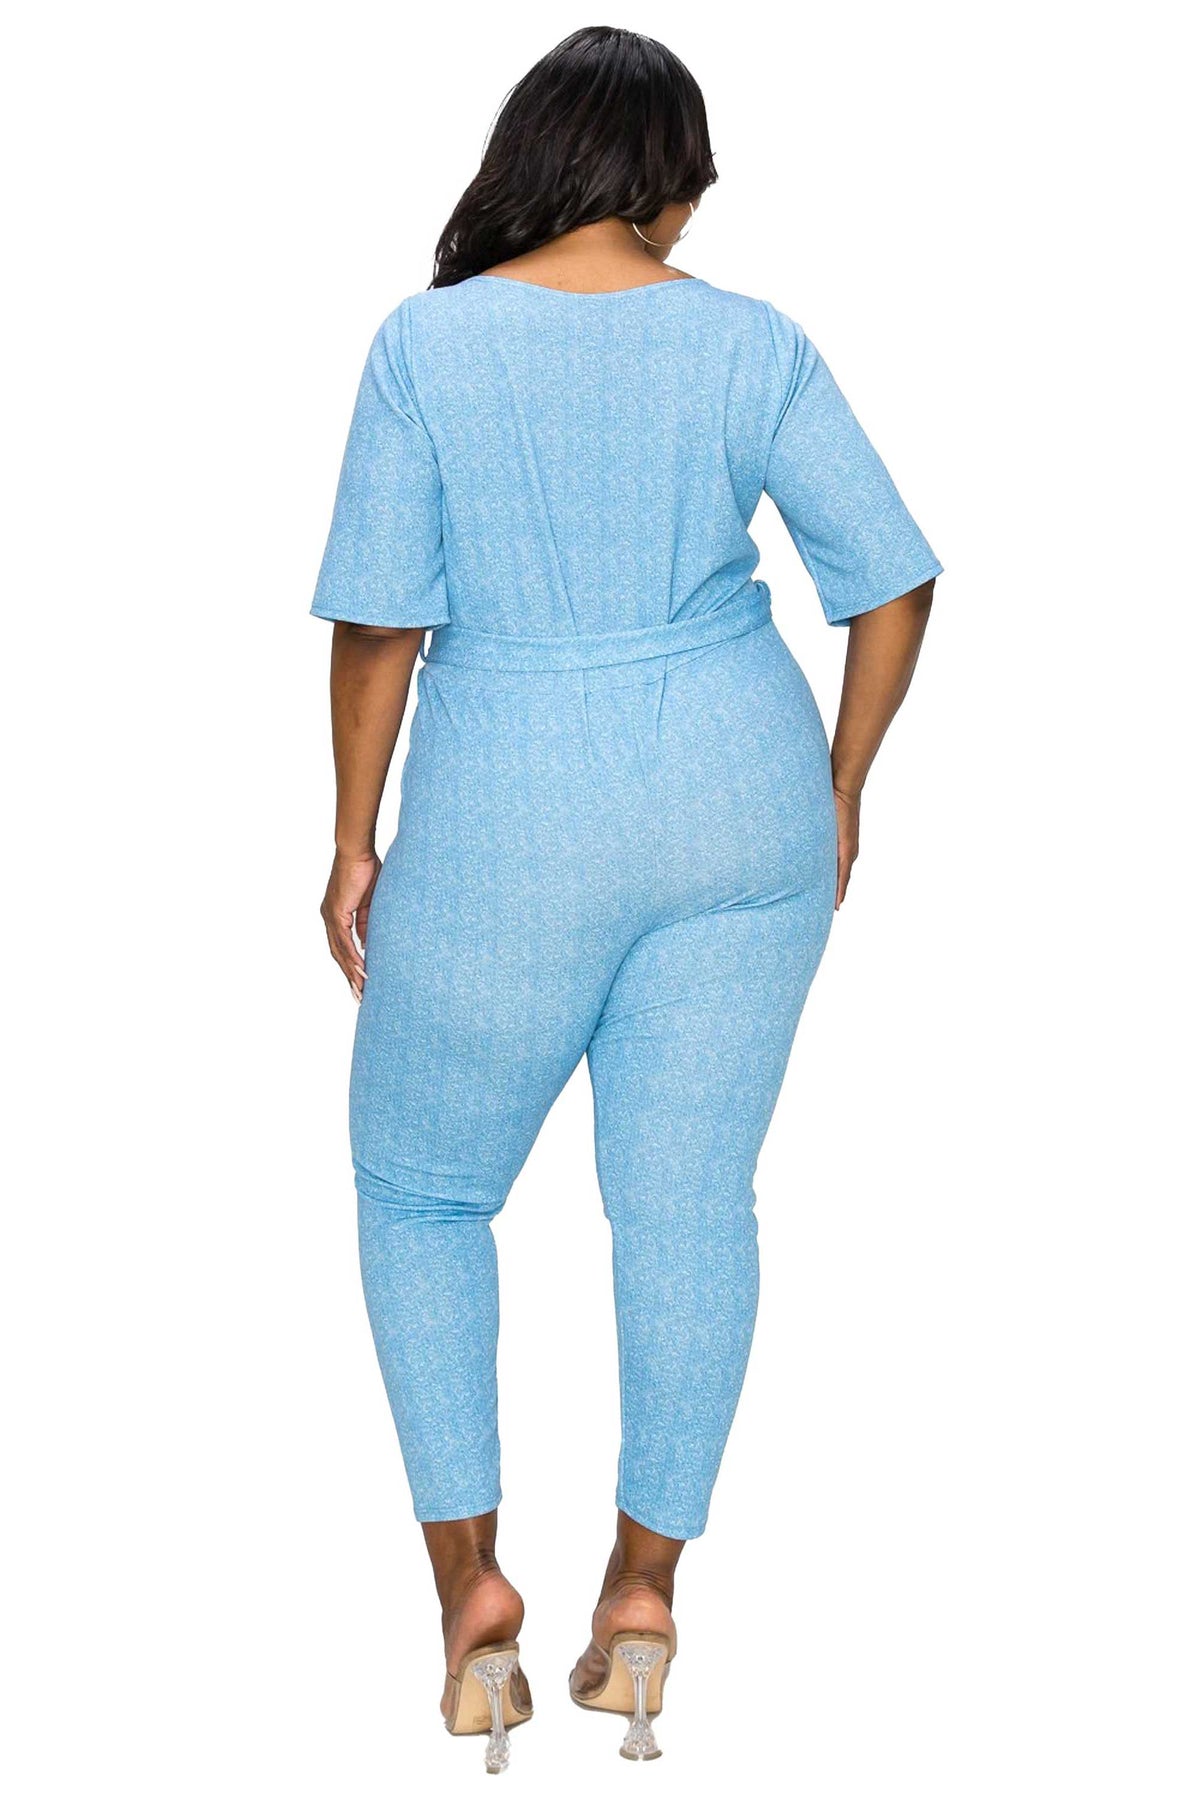 livd apparel plus size boutique contemporary wrap denim jumpsuit waist tie pockets in navy blue